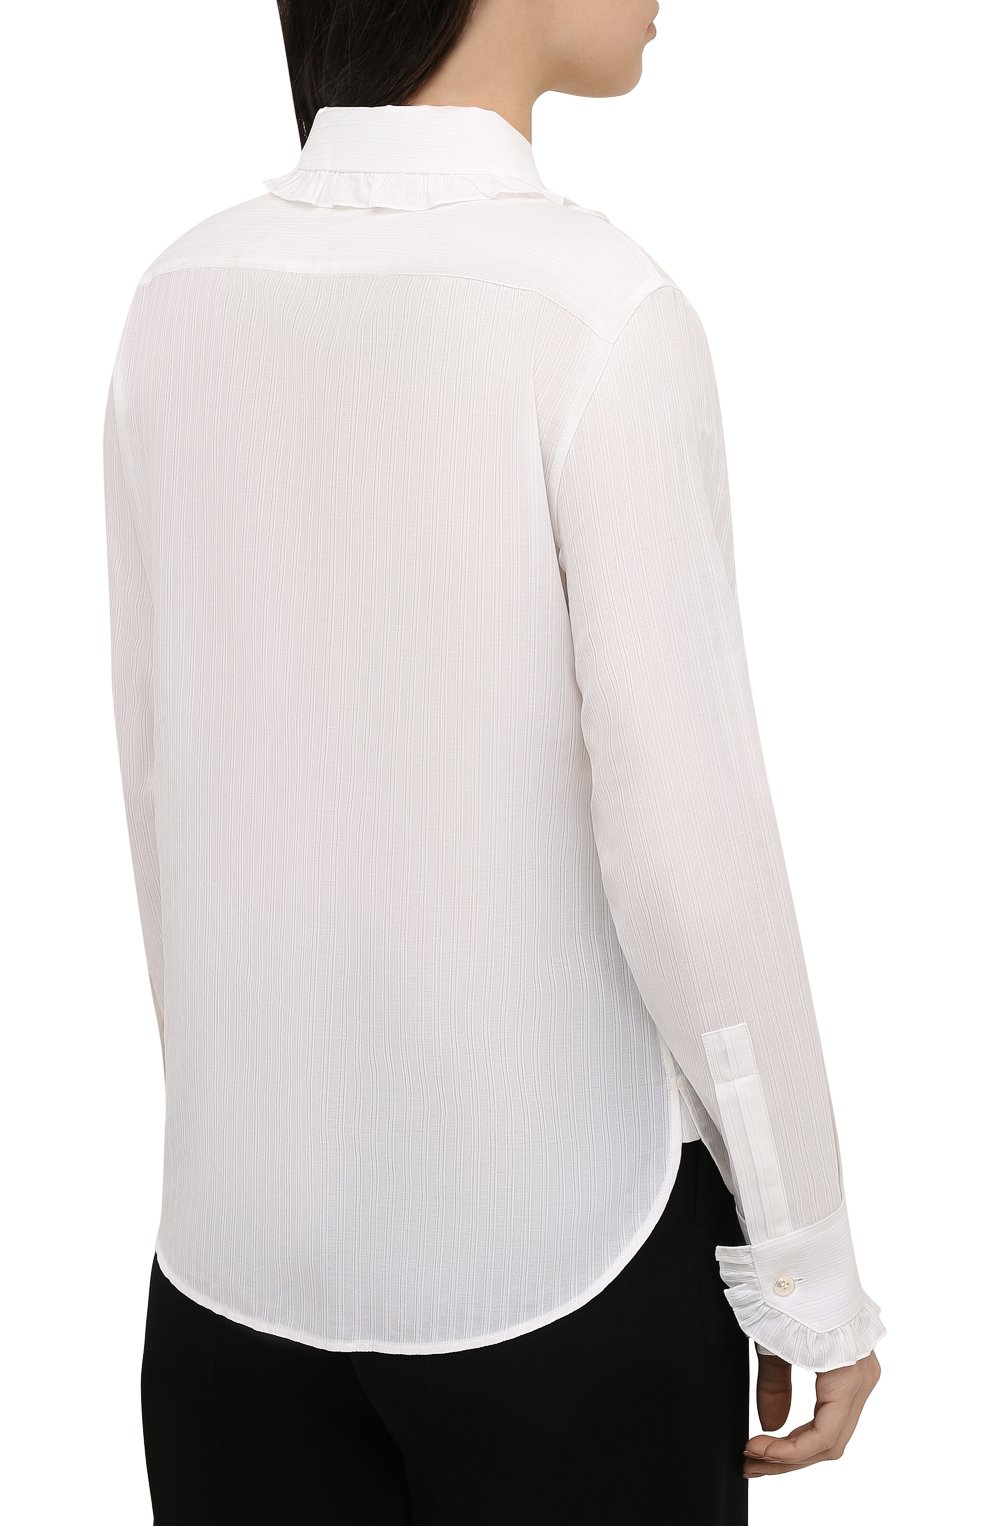 Женская блузка из хлопка и шелка SAINT LAURENT белого цвета, арт. 656972/Y3D31 | Фото 4 (Рукава: Длинные; Принт: Без принта; Длина (для топов): Стандартные; Материал внешний: Хлопок; Стили: Классический, Романтичный; Женское Кросс-КТ: Блуза-одежда)